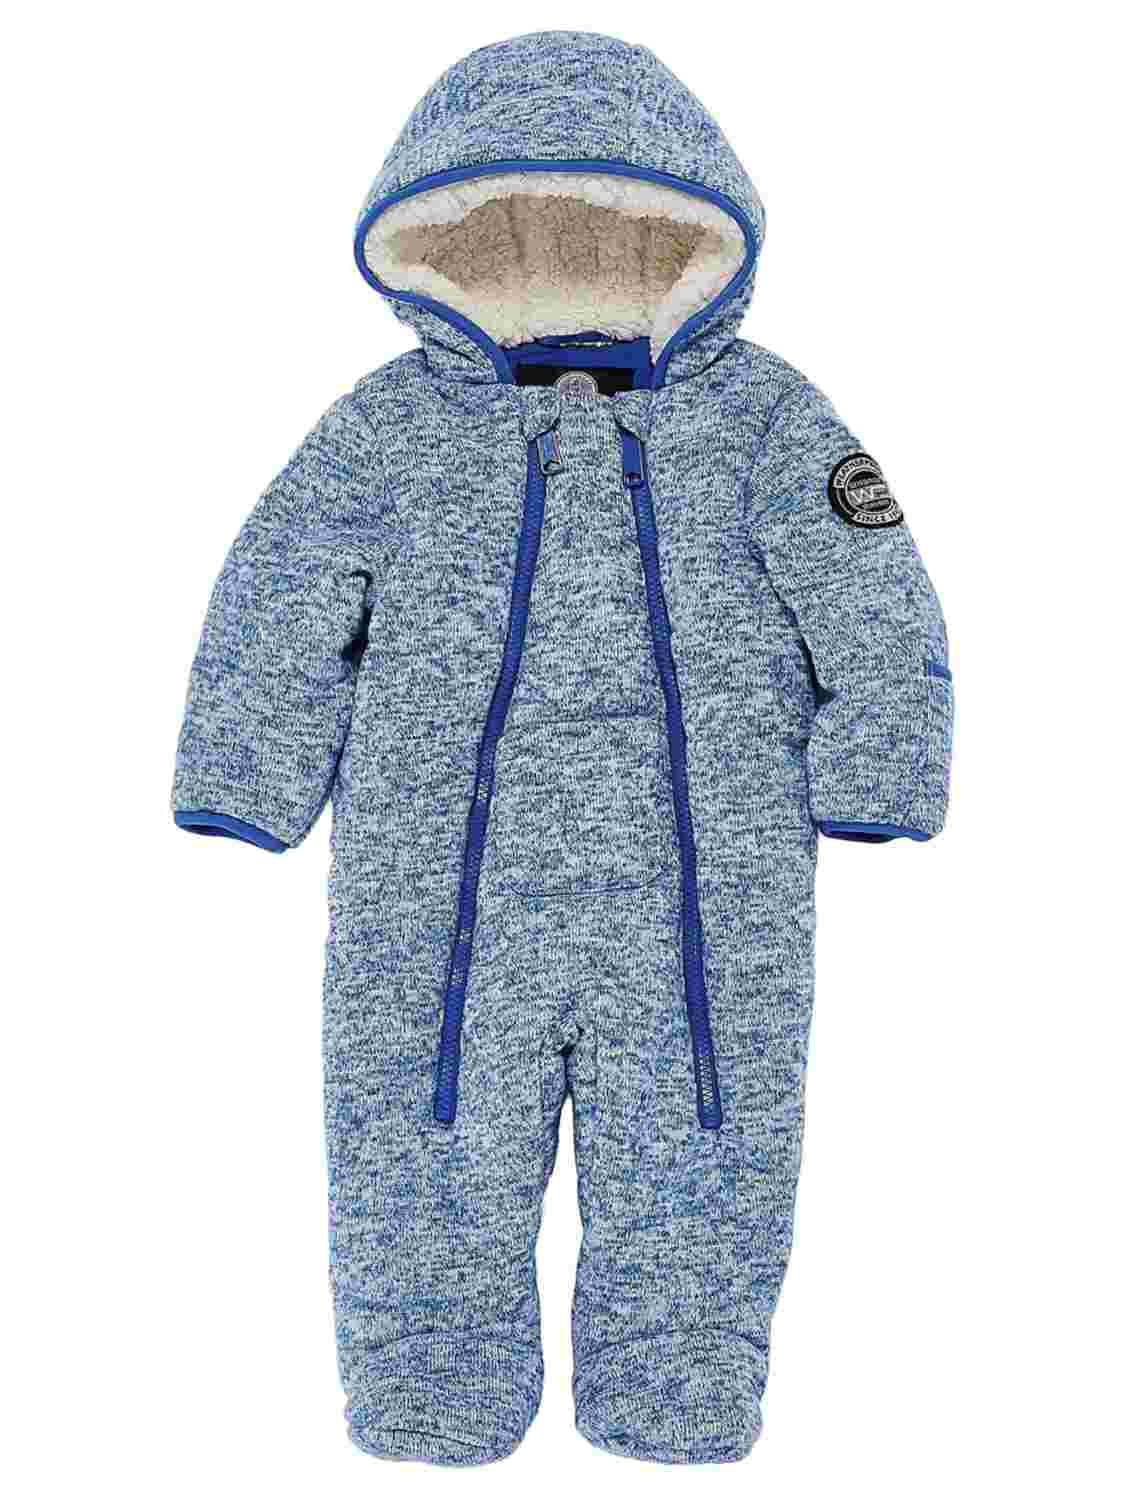 weatherproof infant snowsuit